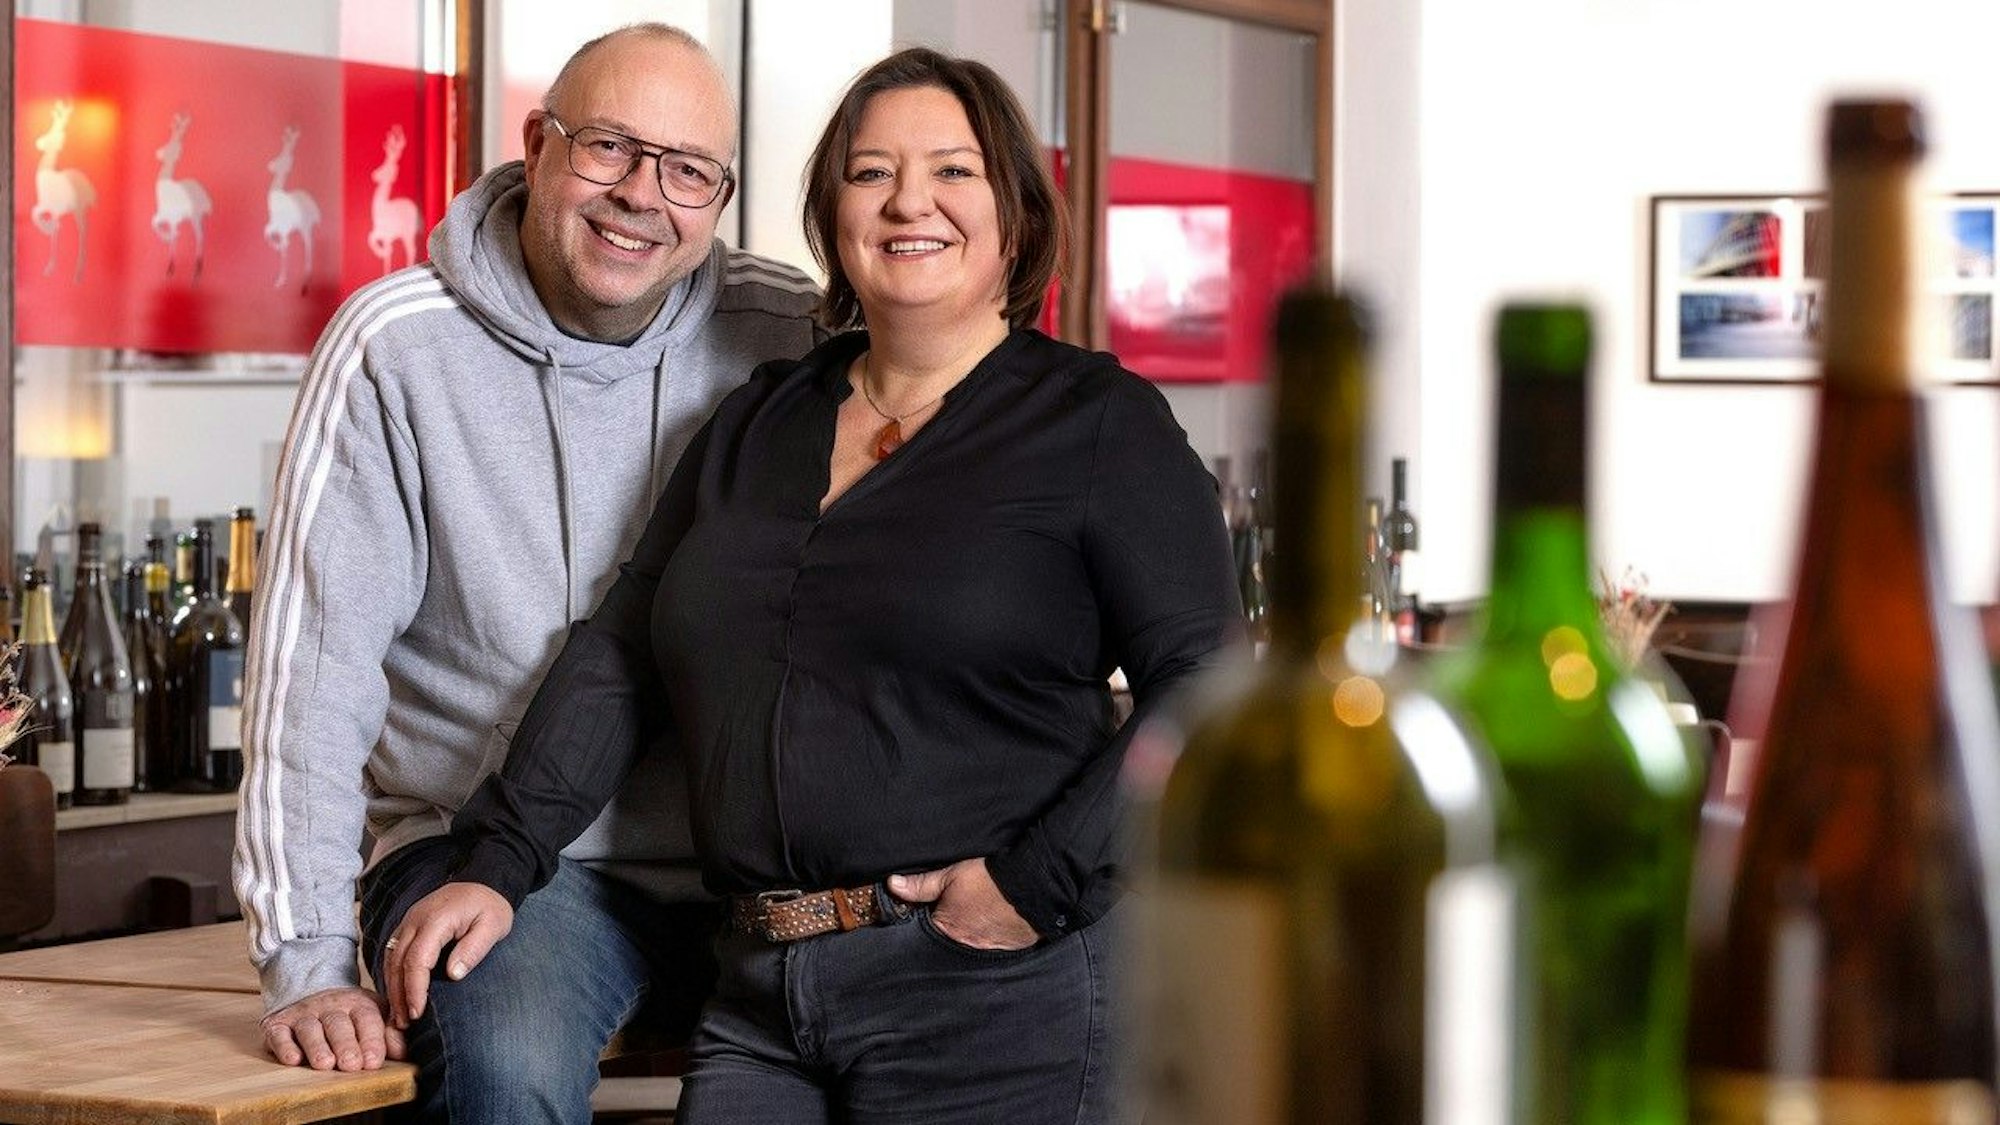 Andreas Esser und Iris Giessauf an ihrer Theke, im Vordergrund Weinflaschen.